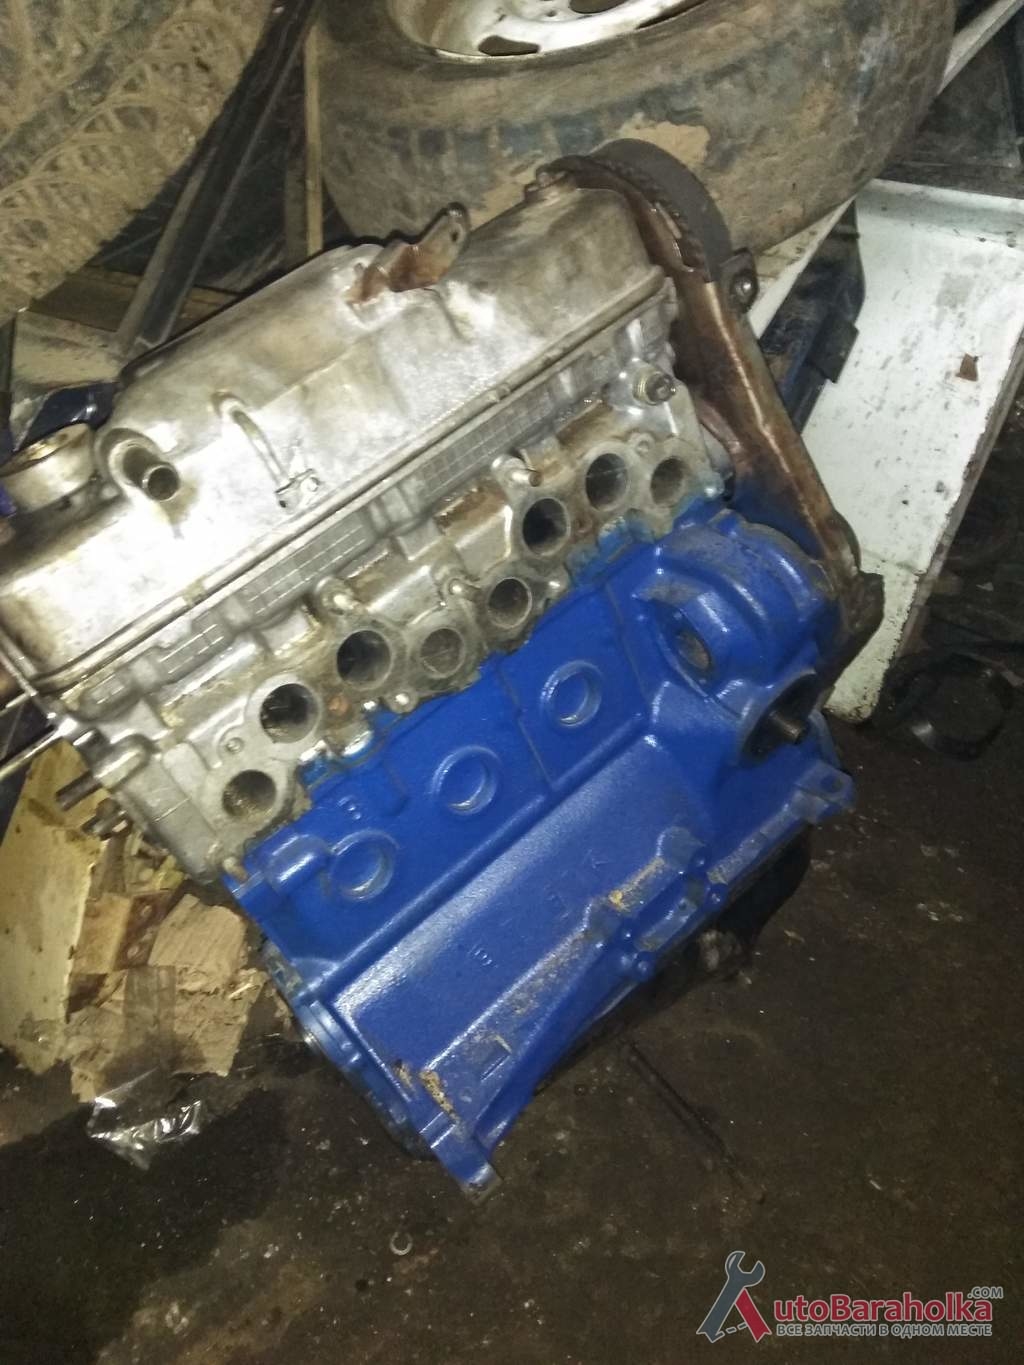 Продам Двигатель ВАЗ 2101 2103 2106 21011 все детали оригинал, первый ремонт, отличное состояние, гарантия Кировоград 